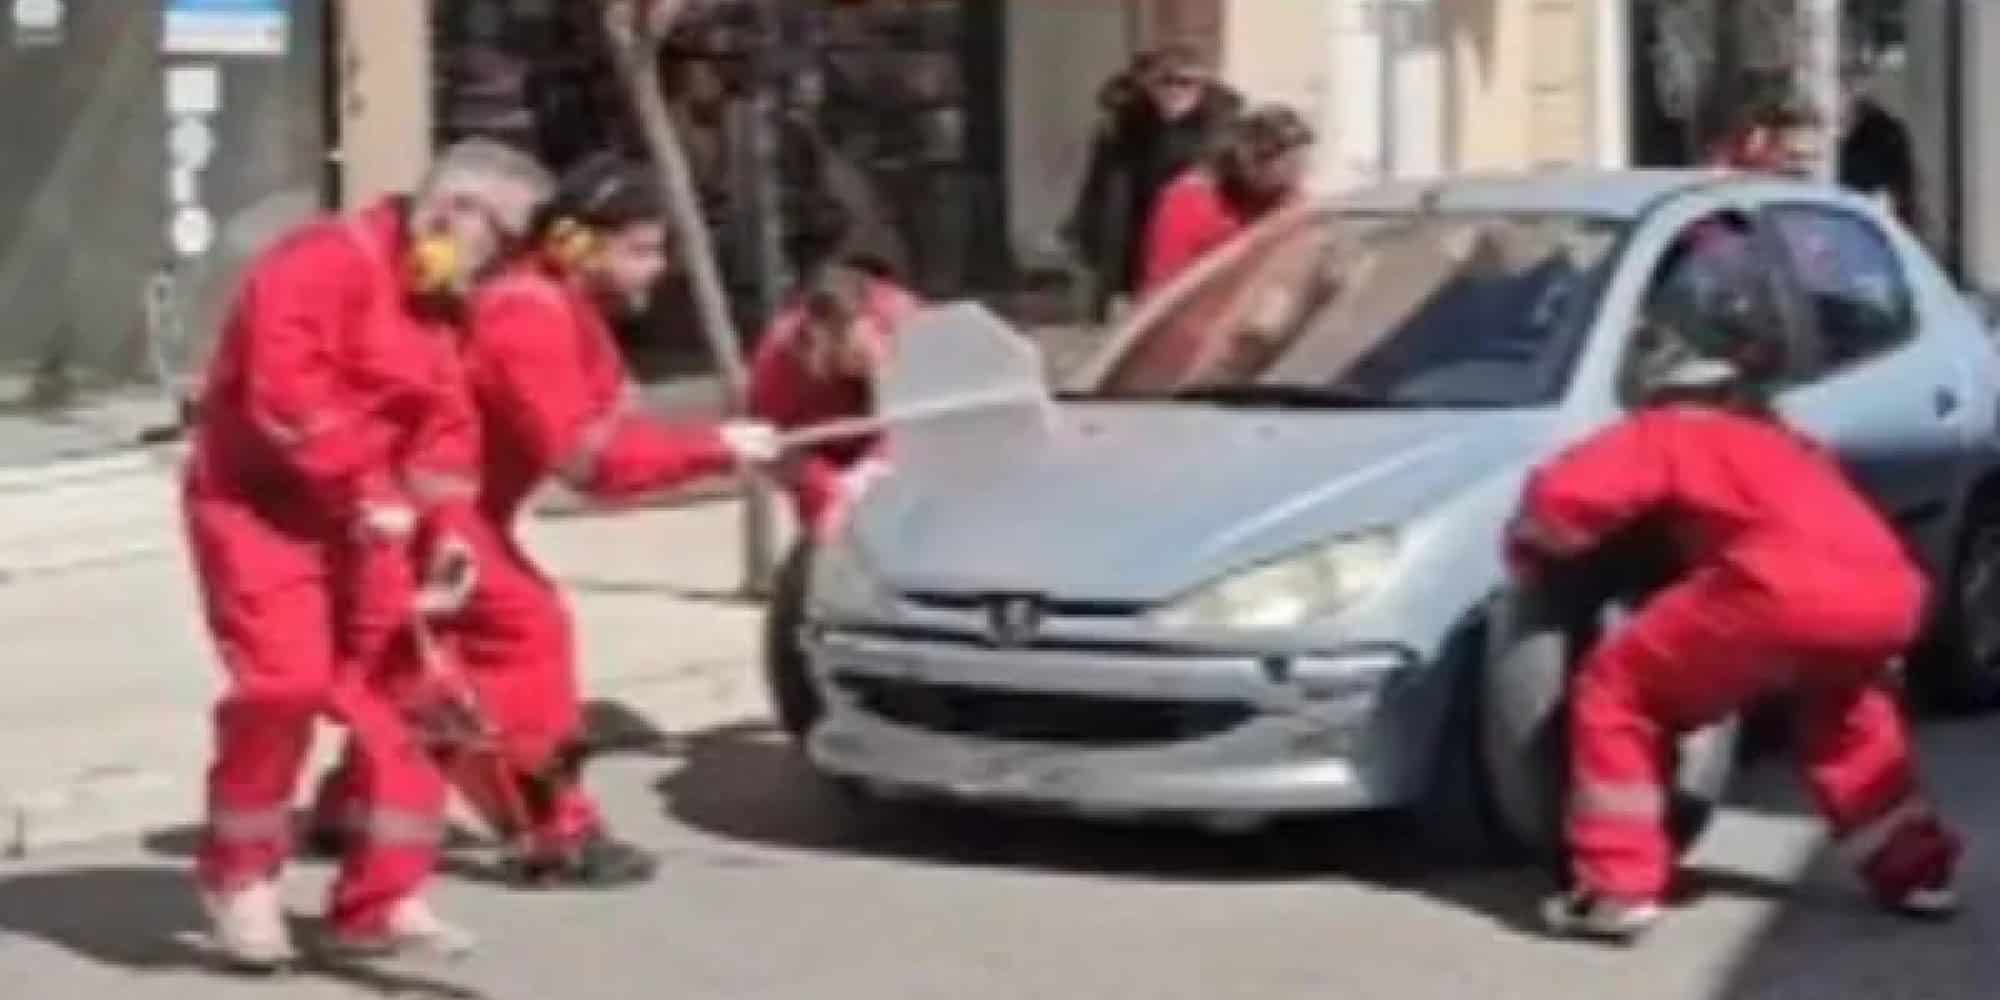 Καρναβαλιστές στο Αίγιο ντύθηκαν μηχανικοί Ferrari